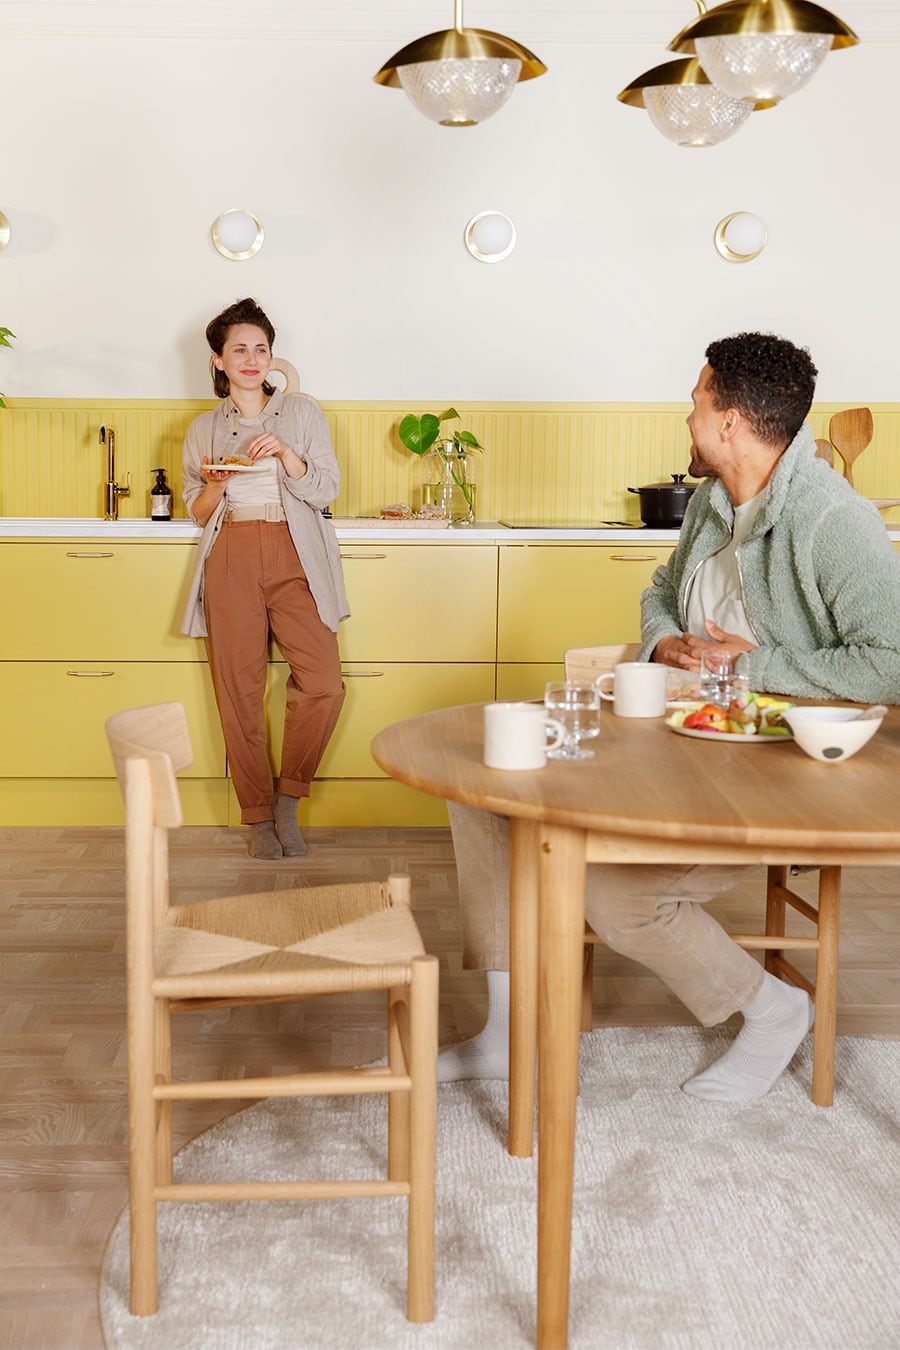 Yellow Trend Mellow kjøkken med en kvinne som spiser frokost ved vasken mens en mann sitter ved et bord og ser på henne